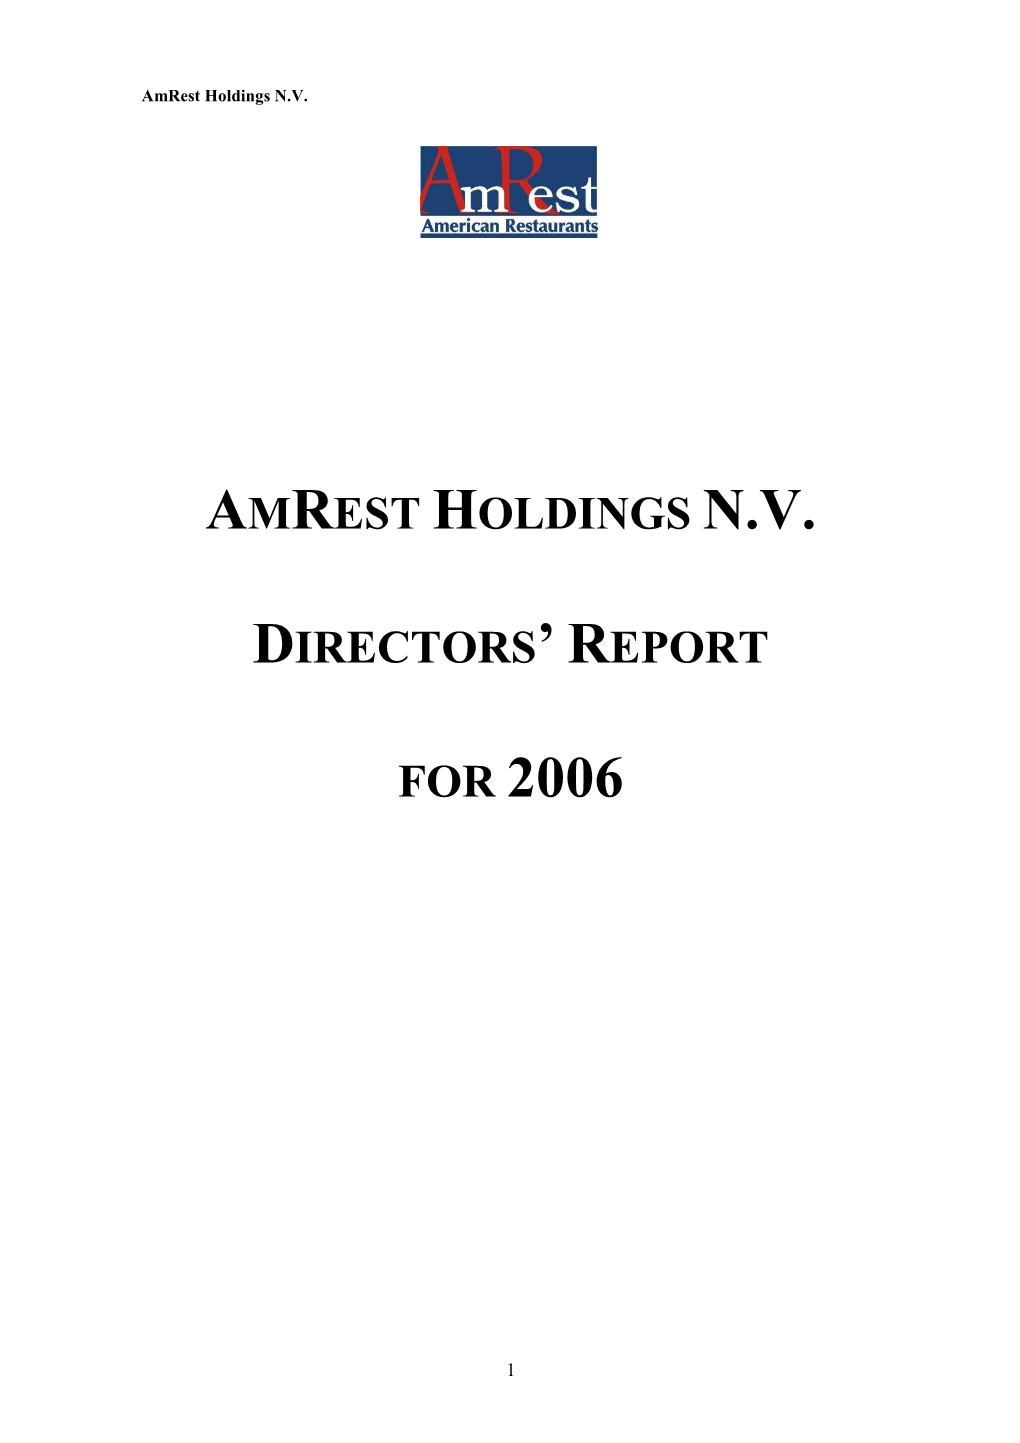 Amrest Directors' Report 2006